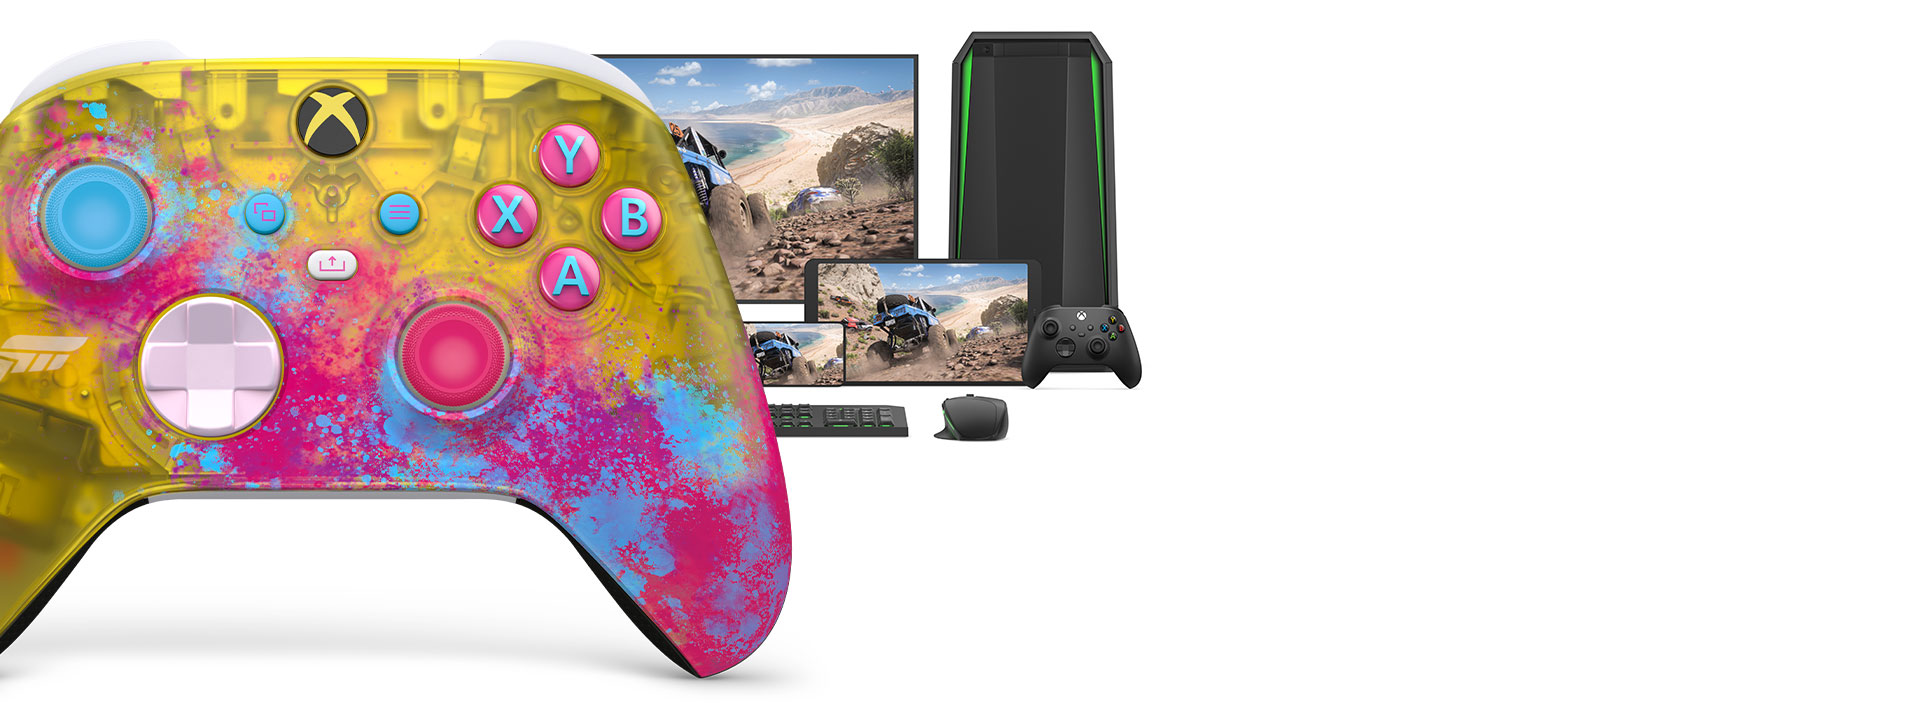 Xbox draadloze controller Forza Horizon 5 met een computer, tv en een Xbox Series S